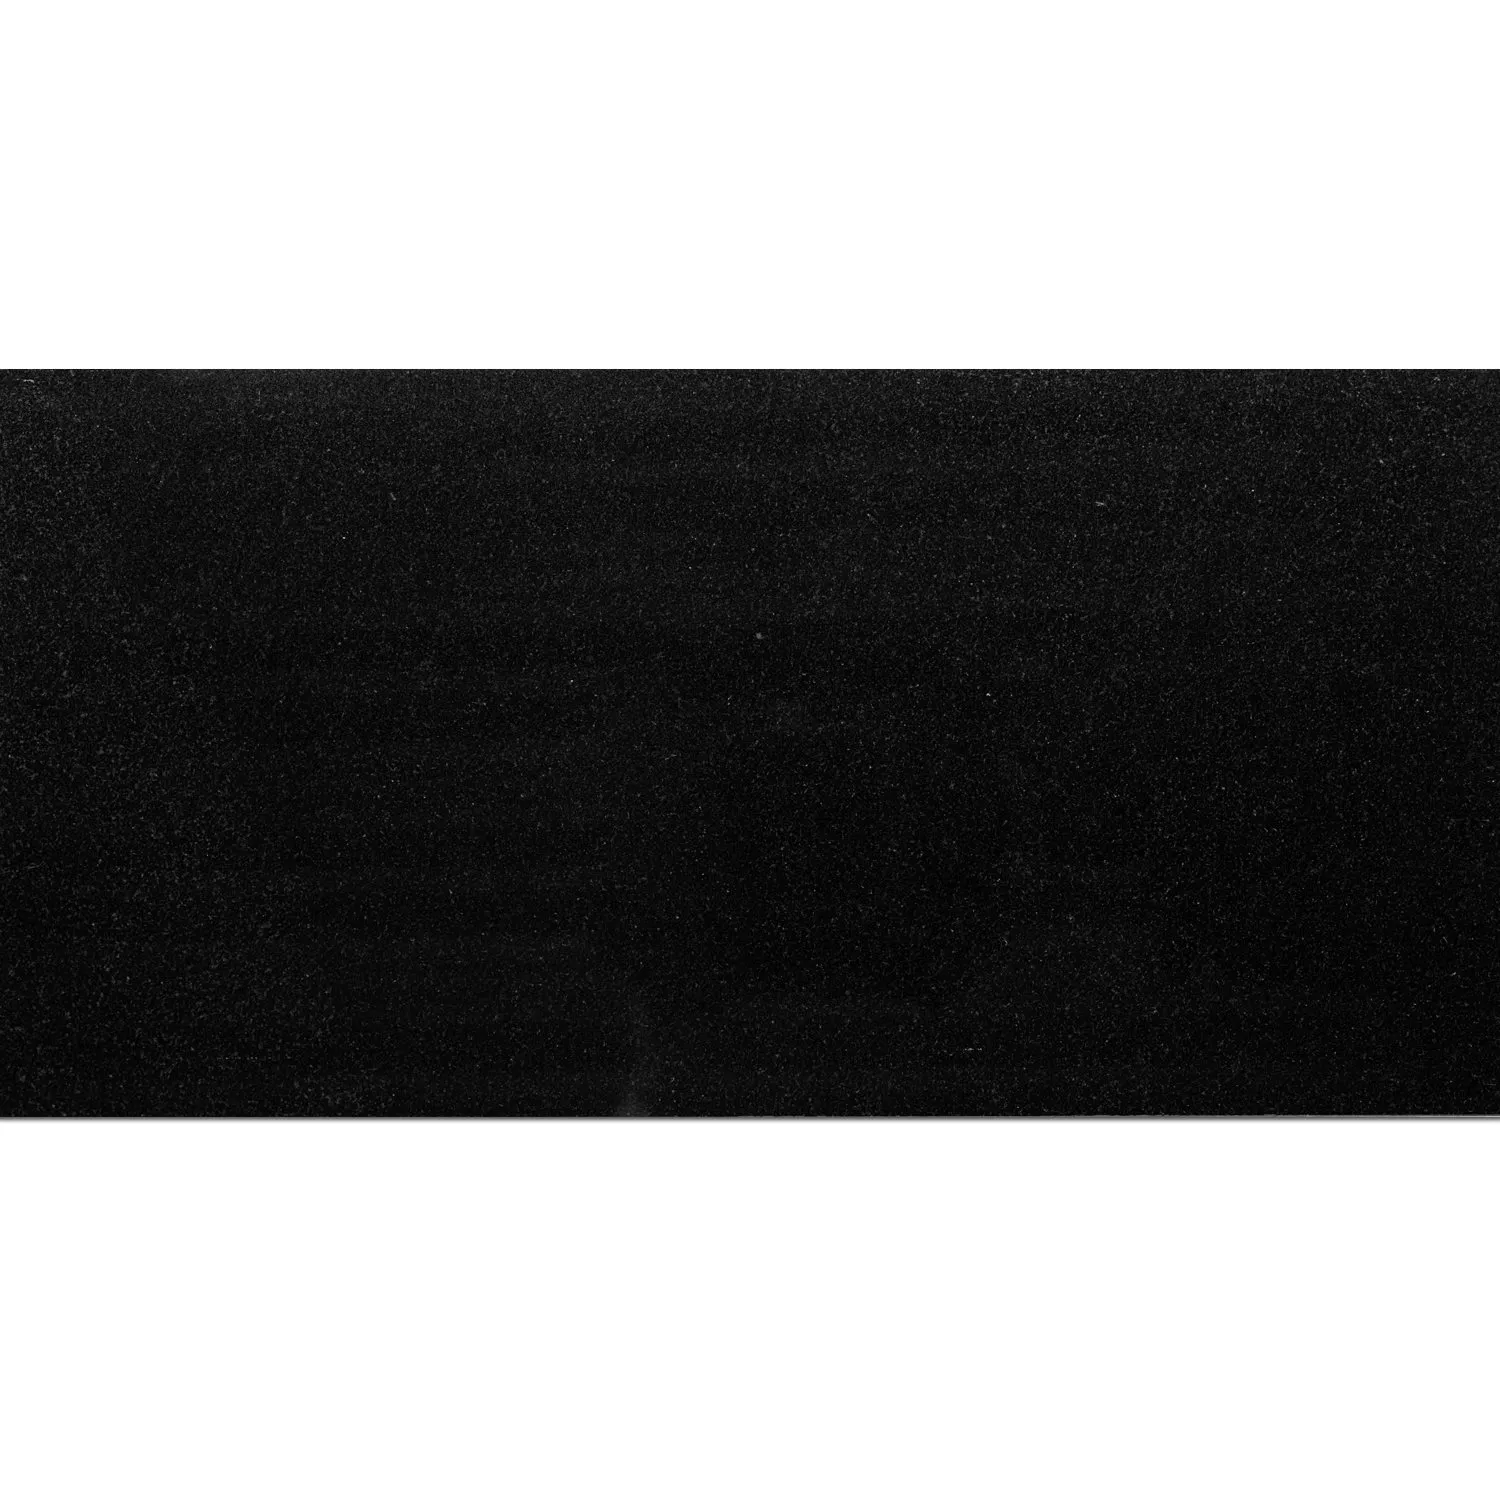 Πλακάκια Aπό Φυσική Πέτρα Γρανίτης Absolute Black Αμεμπτος 30,5x61cm